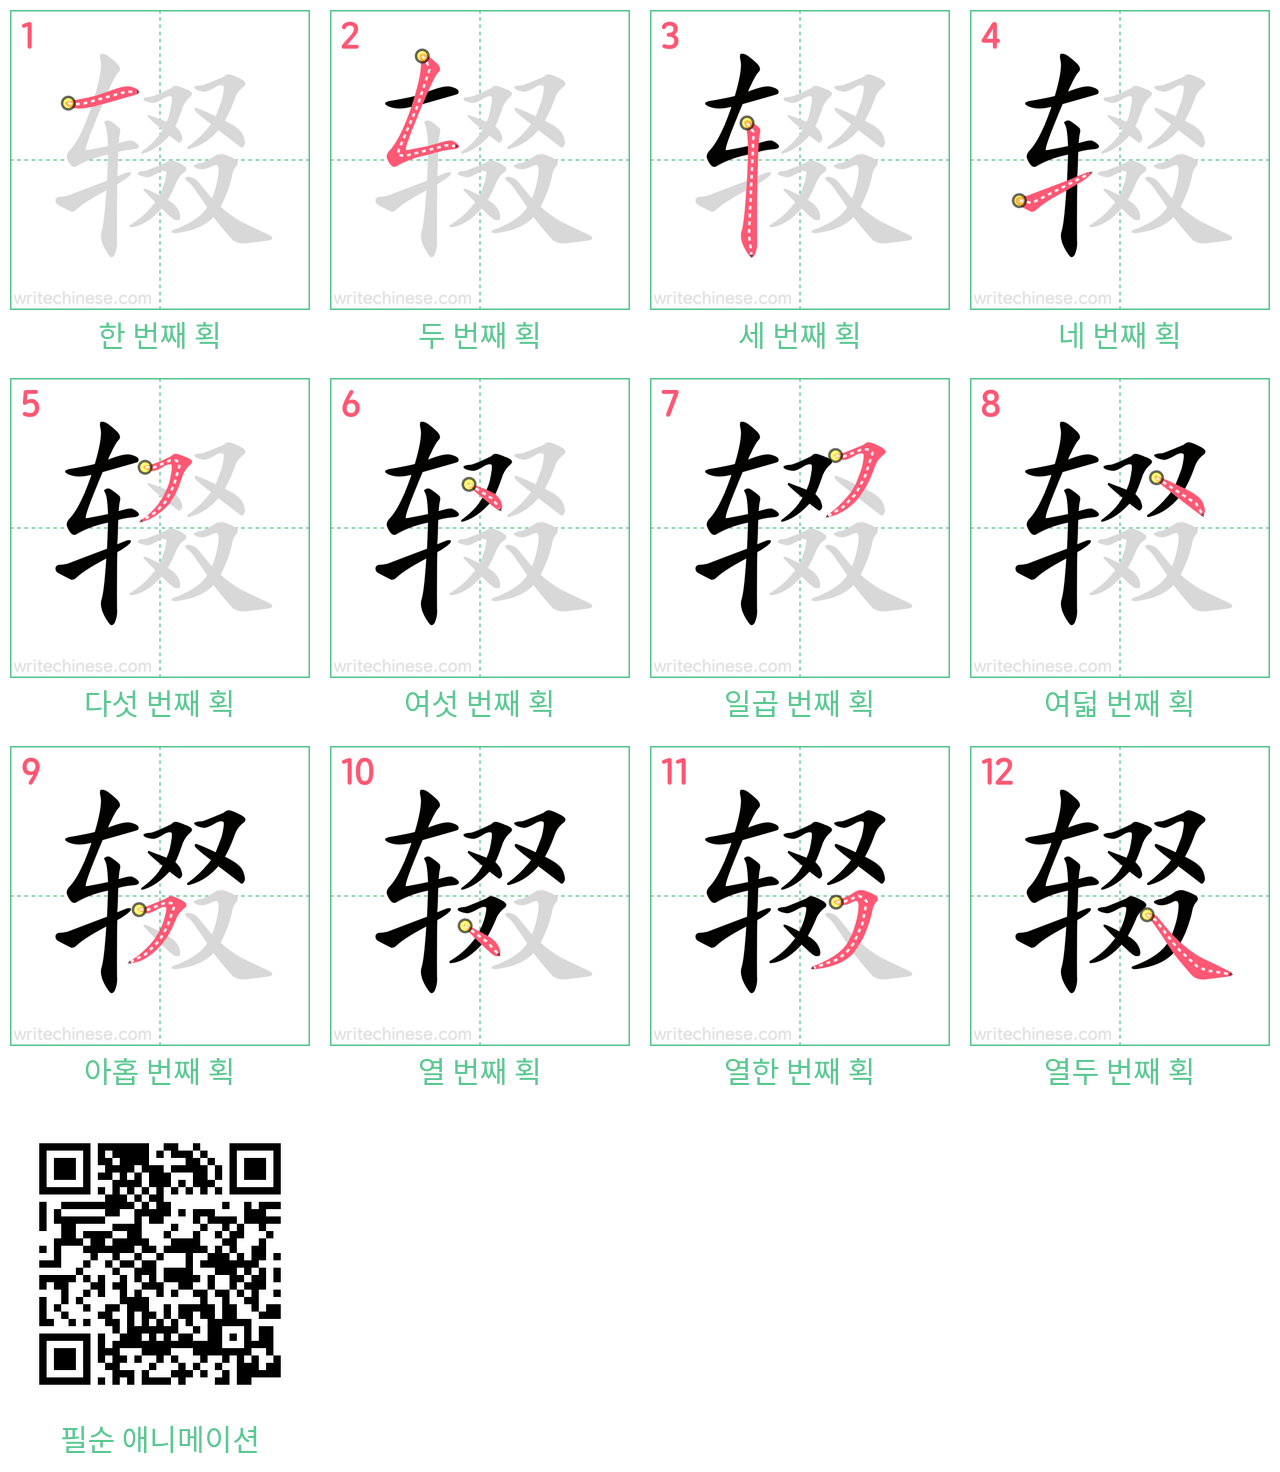 辍 step-by-step stroke order diagrams